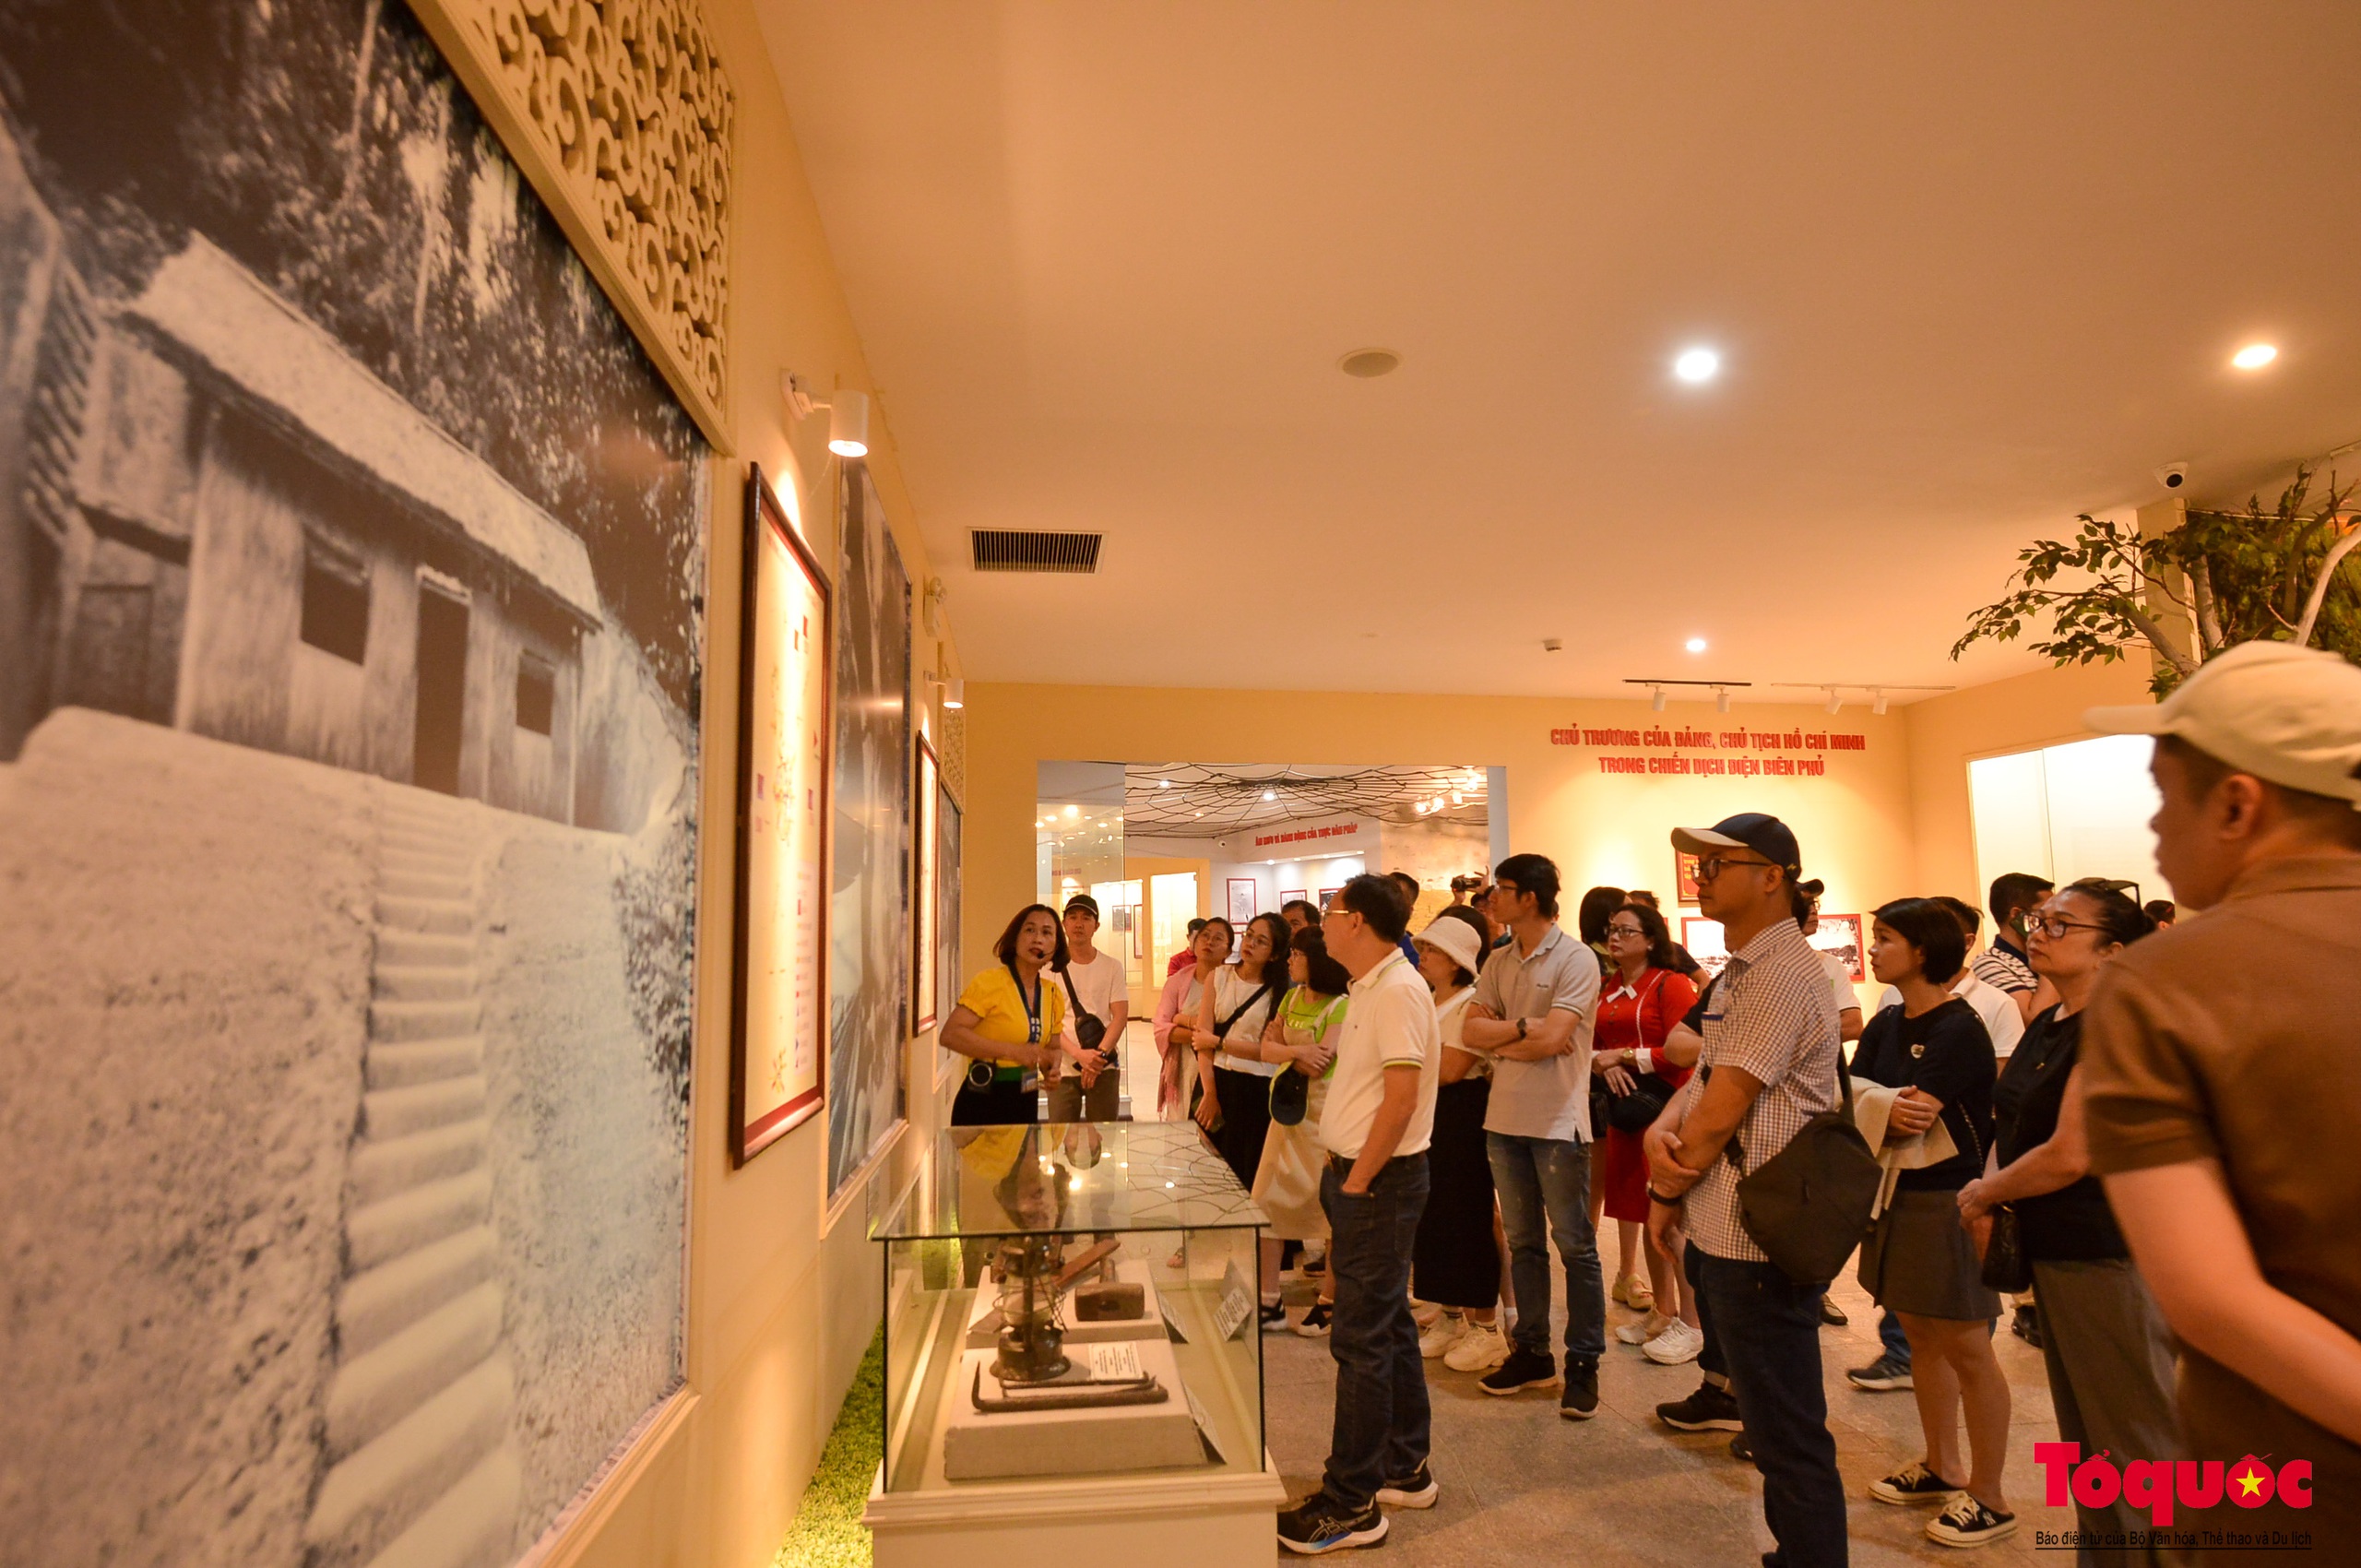 Bảo tàng Chiến thắng lịch sử Điện Biên Phủ - điểm đến ý nghĩa trong những ngày tháng 5 - Ảnh 3.